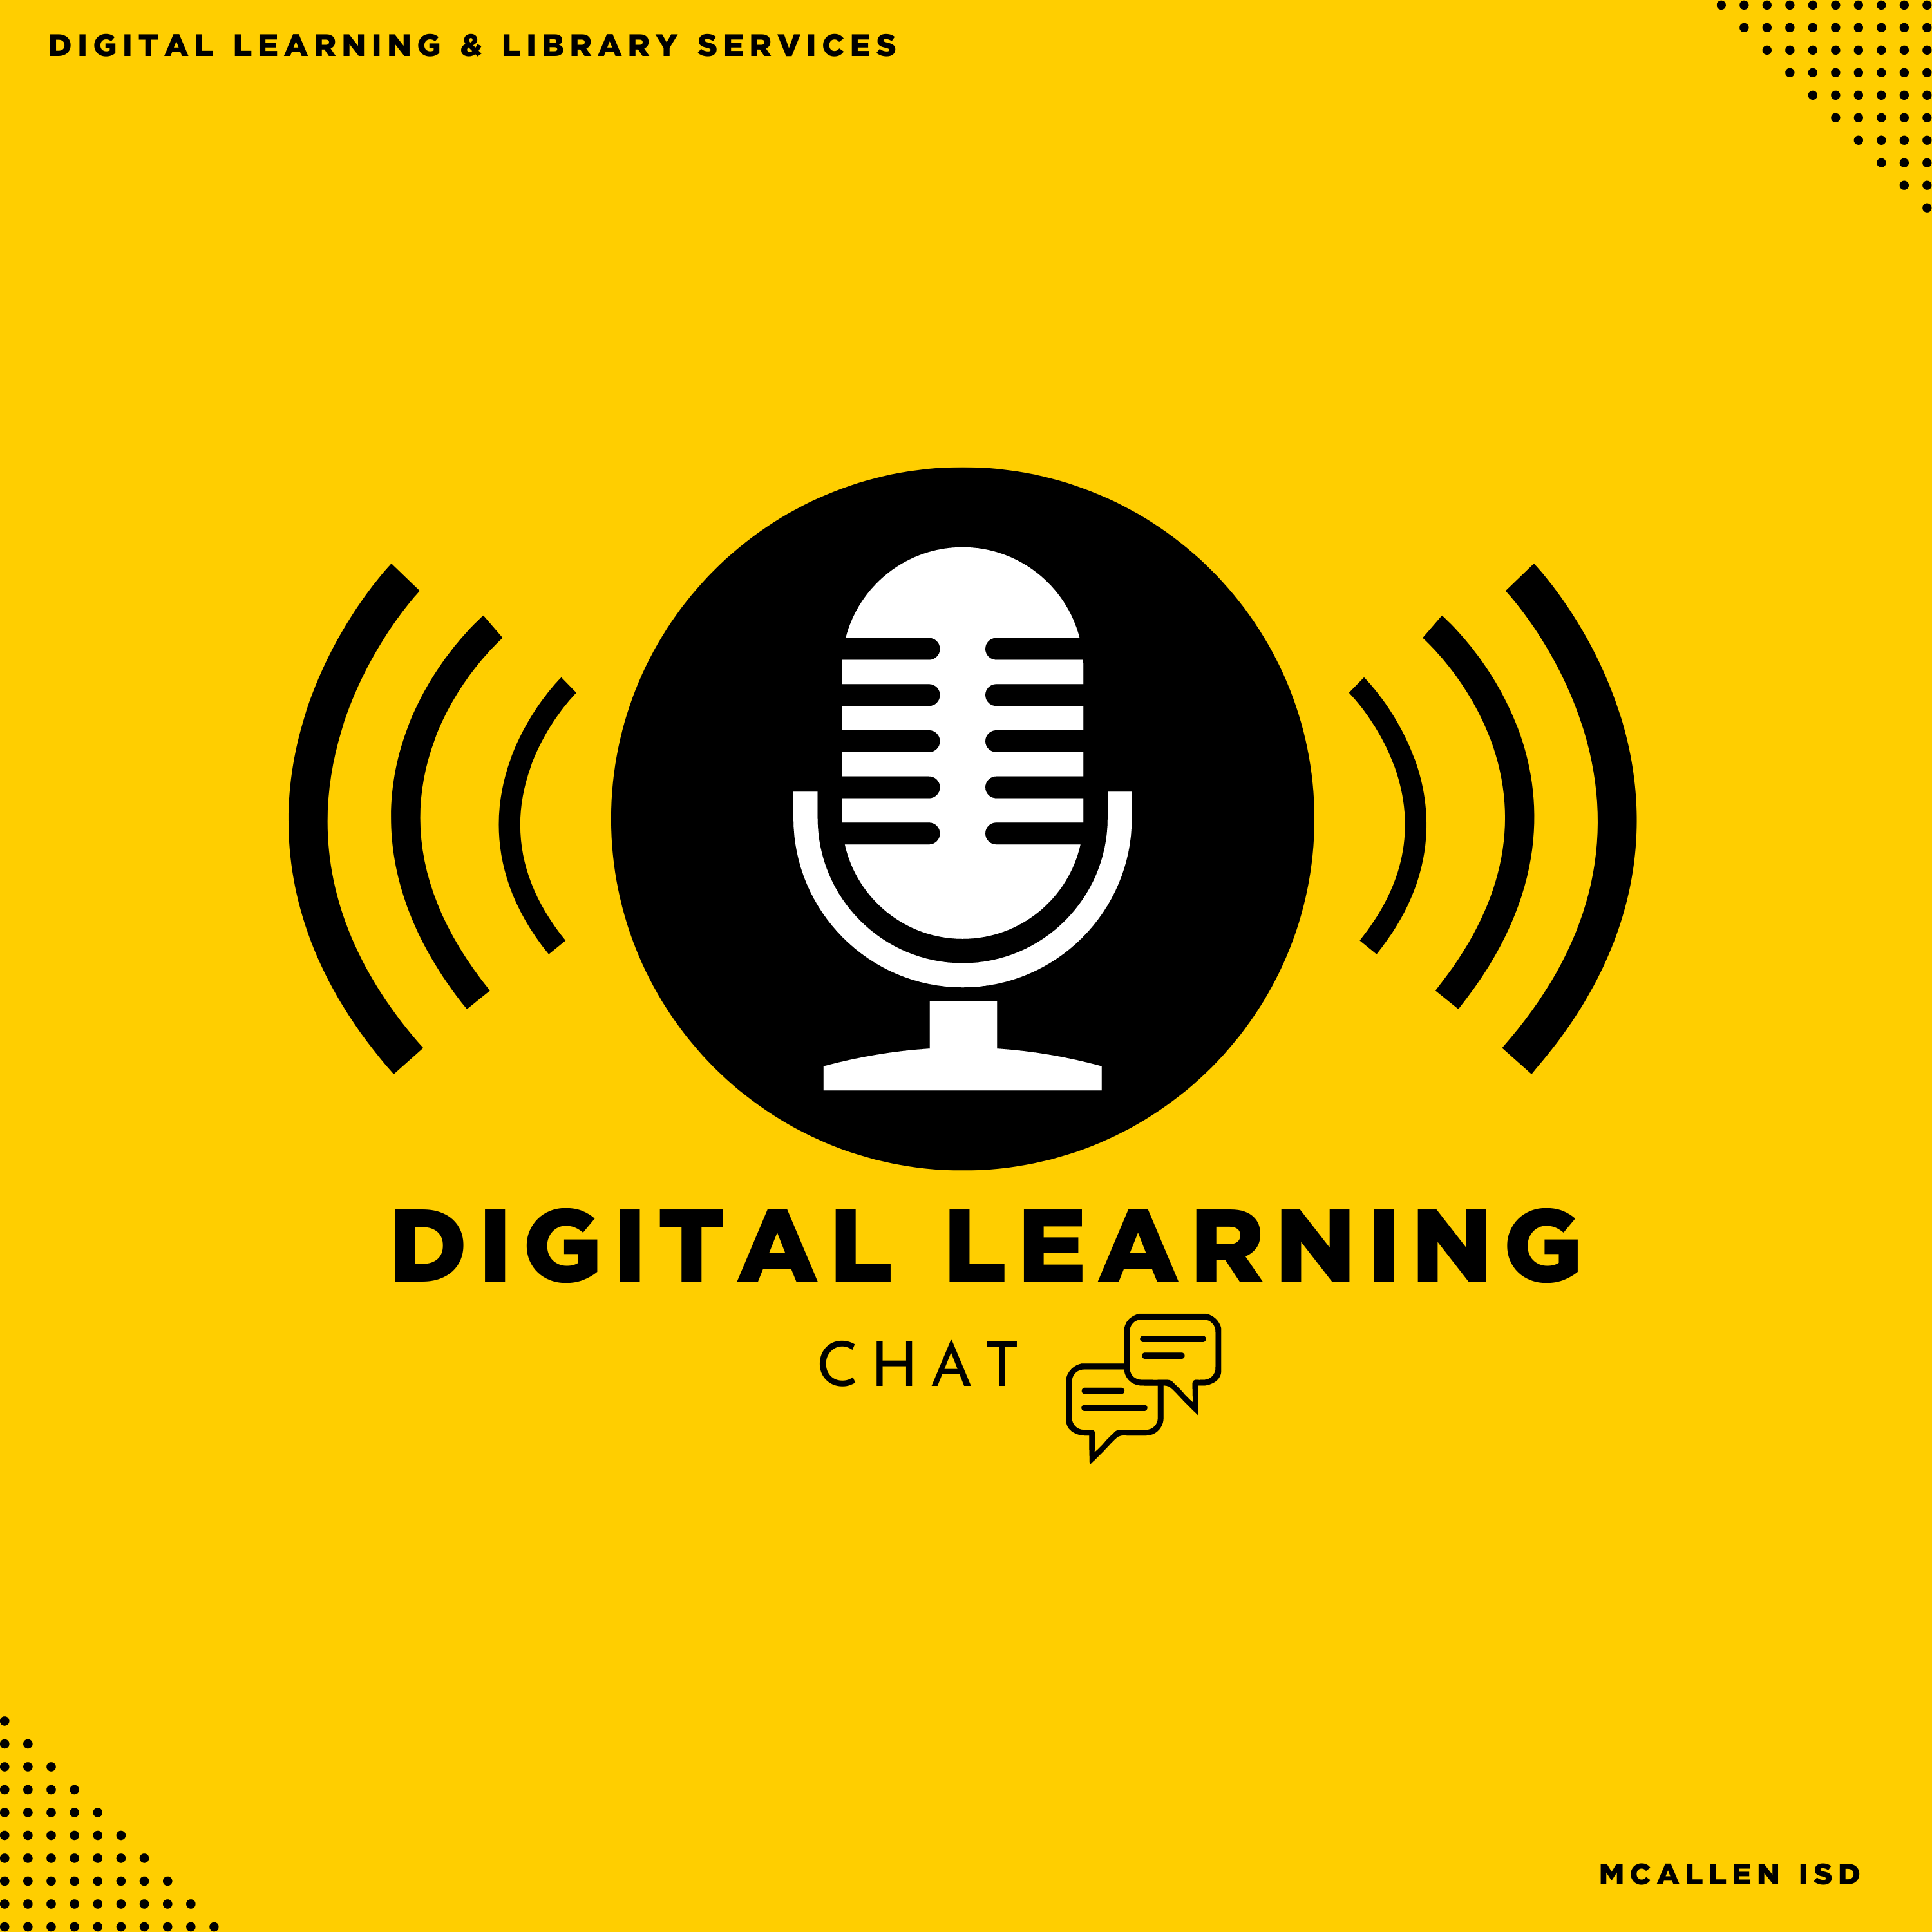 Digital Learning Newsletter graphictter